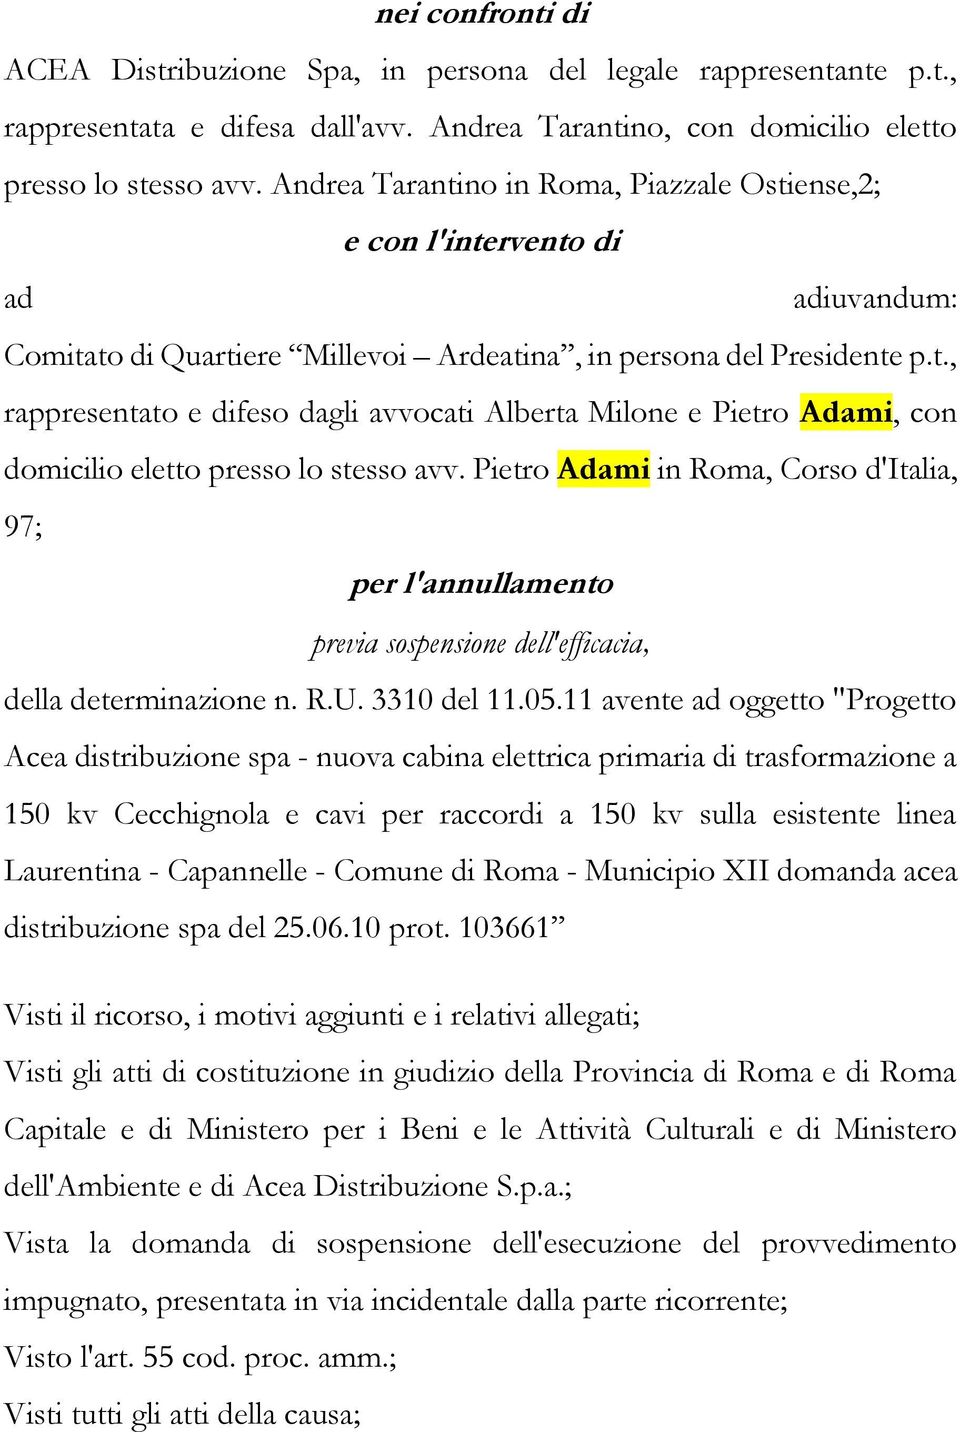 Pietro Adami in Roma, Corso d'italia, 97; per l'annullamento previa sospensione dell'efficacia, della determinazione n. R.U. 3310 del 11.05.